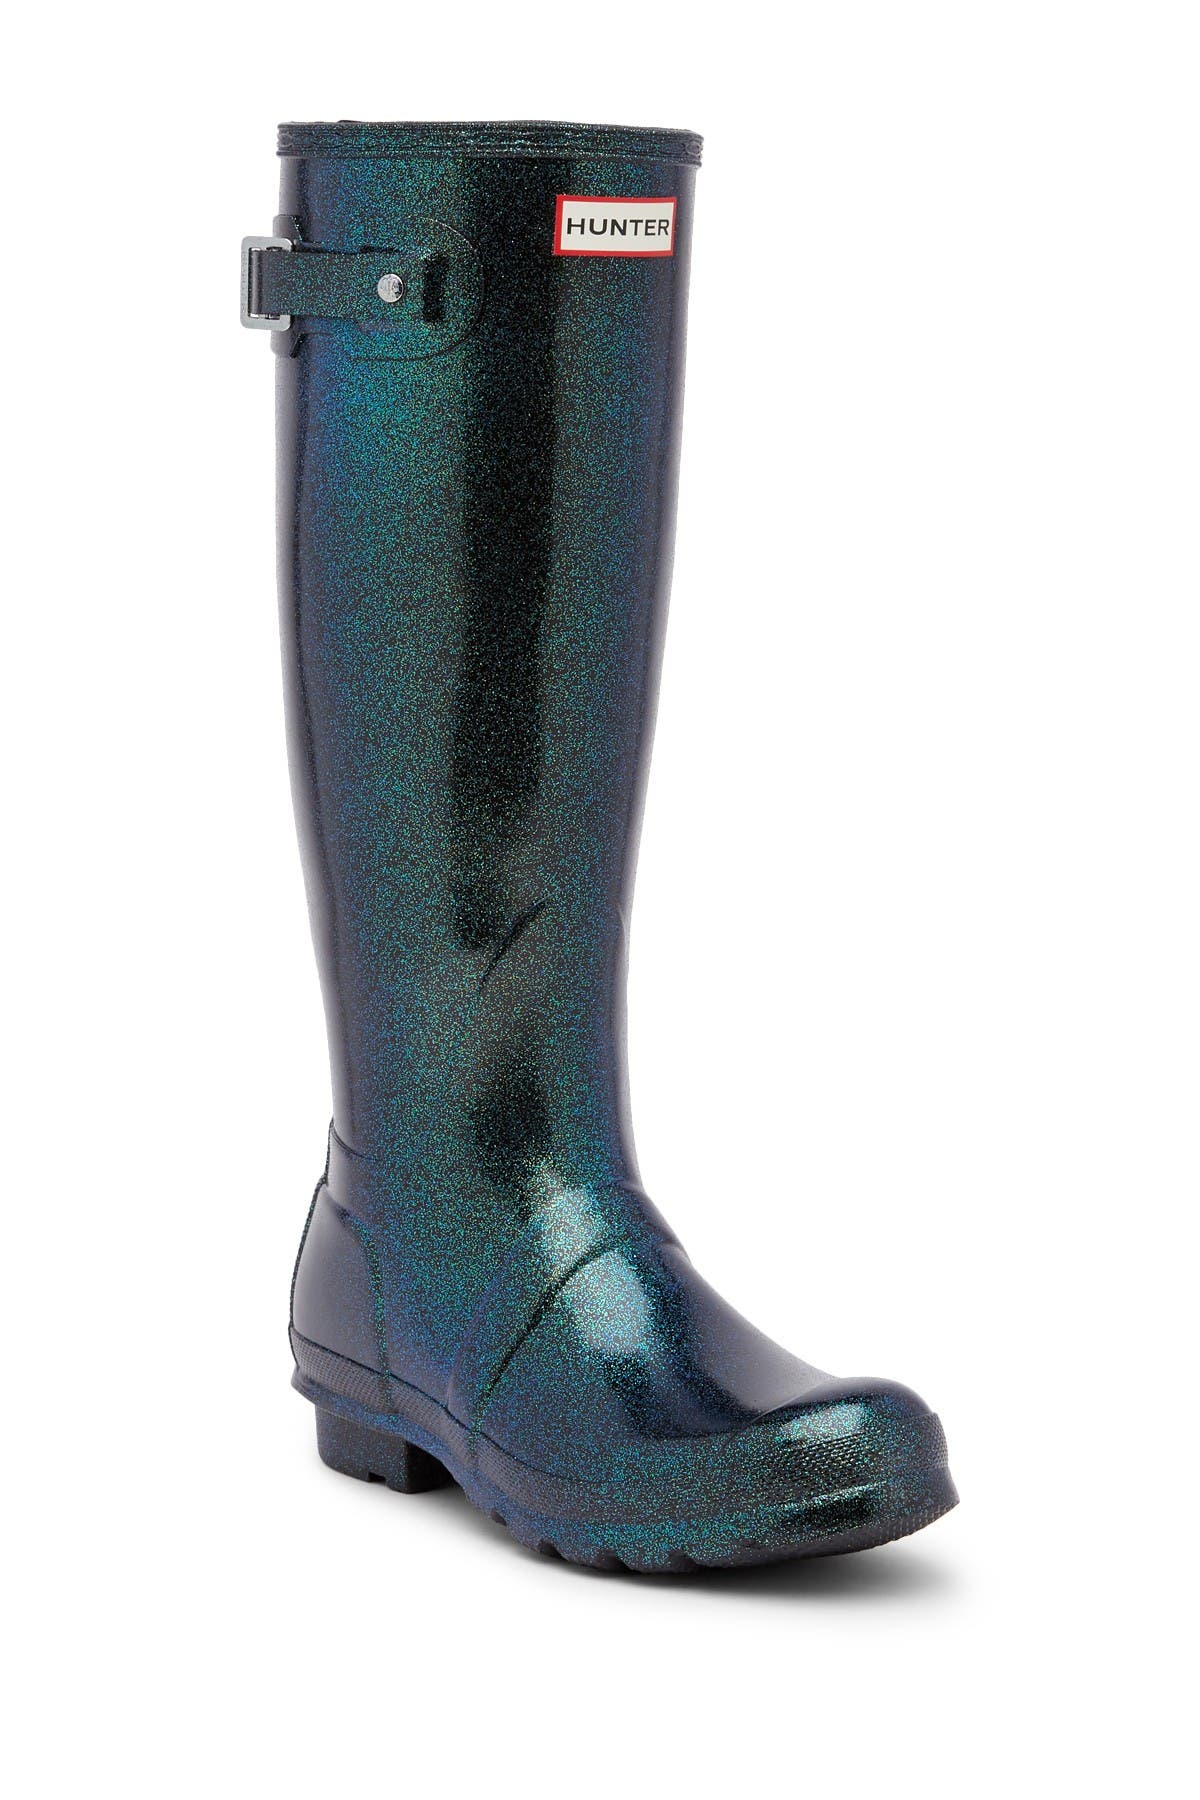 hunter starcloud tall rain boots